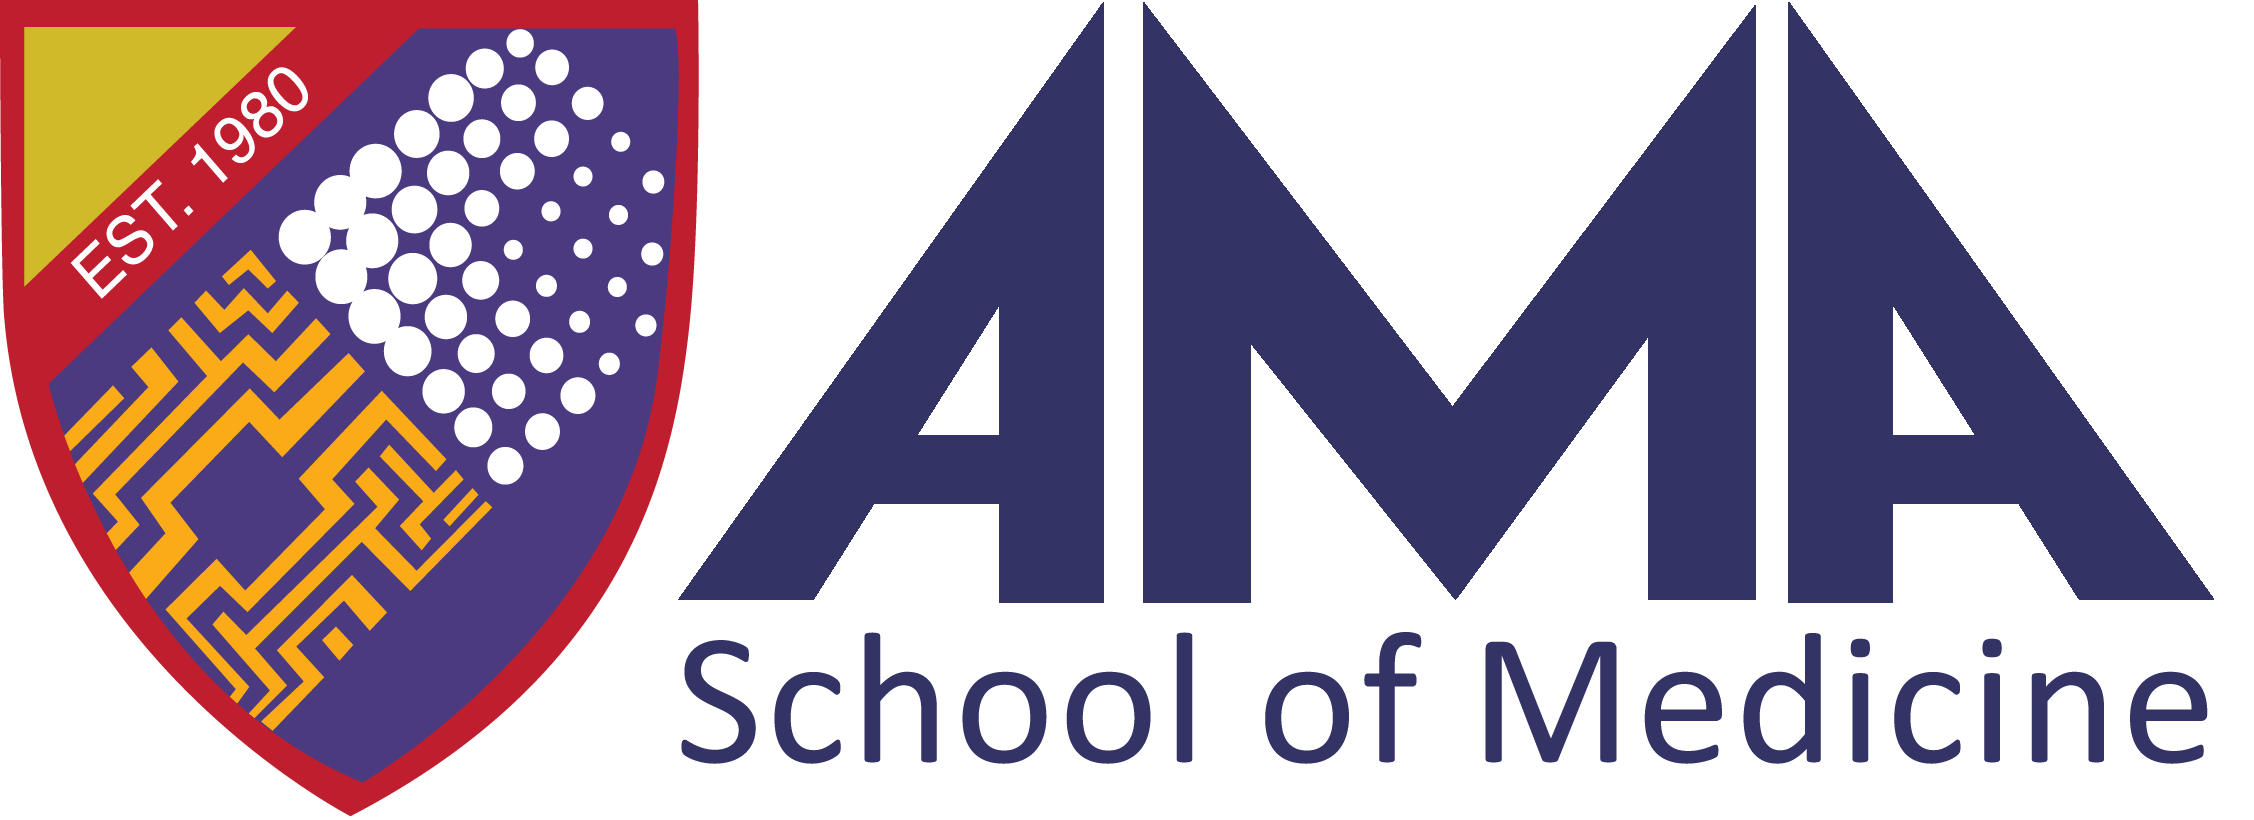 AMA Logo - Logo Of Ama - 9000+ Logo Design Ideas